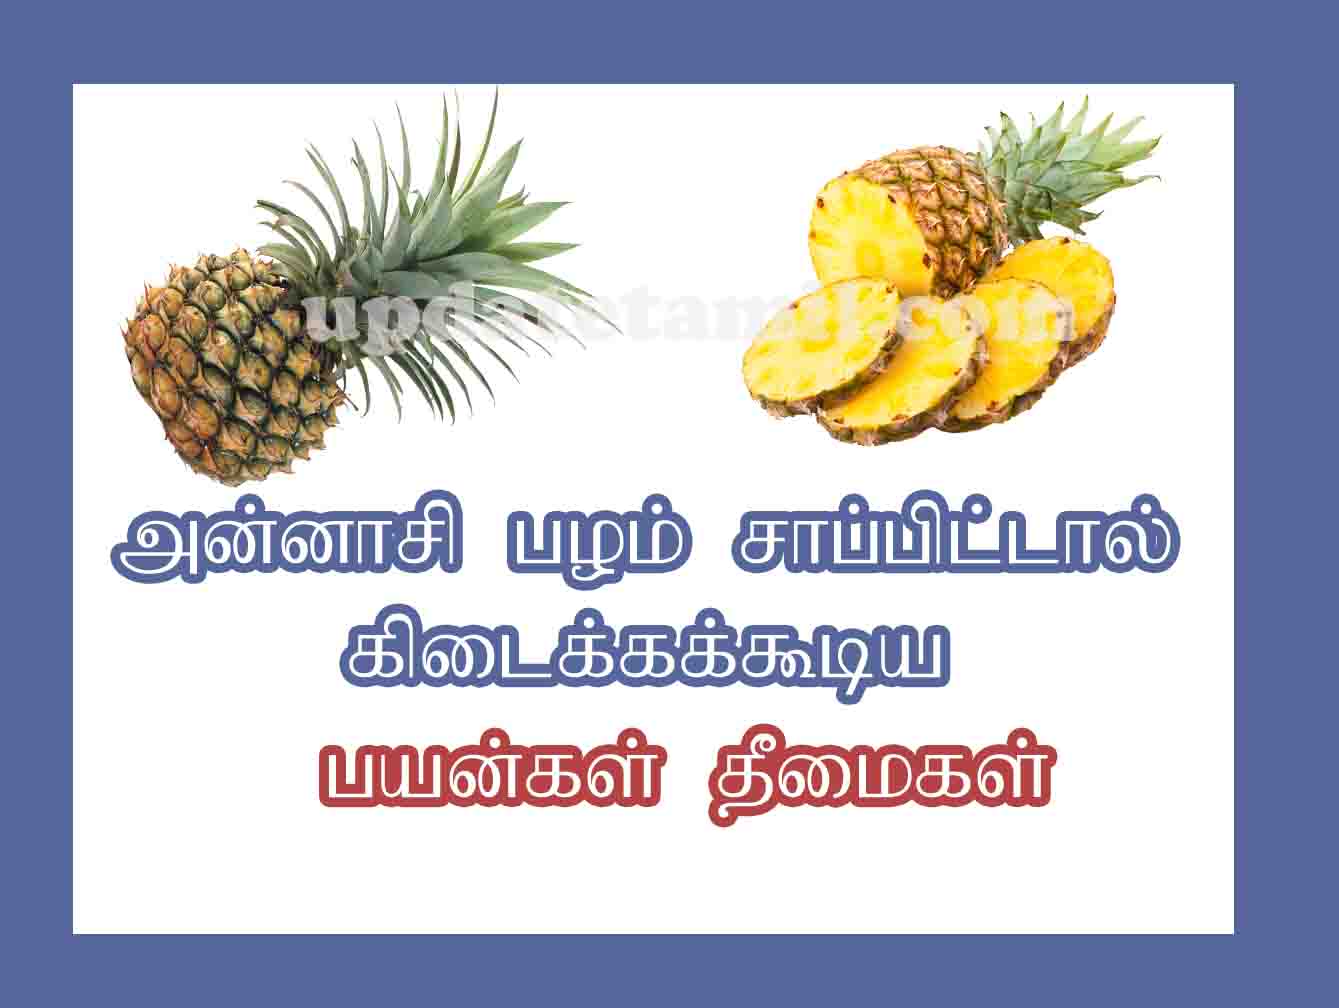 அன்னாசி பழம் பயன்கள் pineapple benefits in tamil